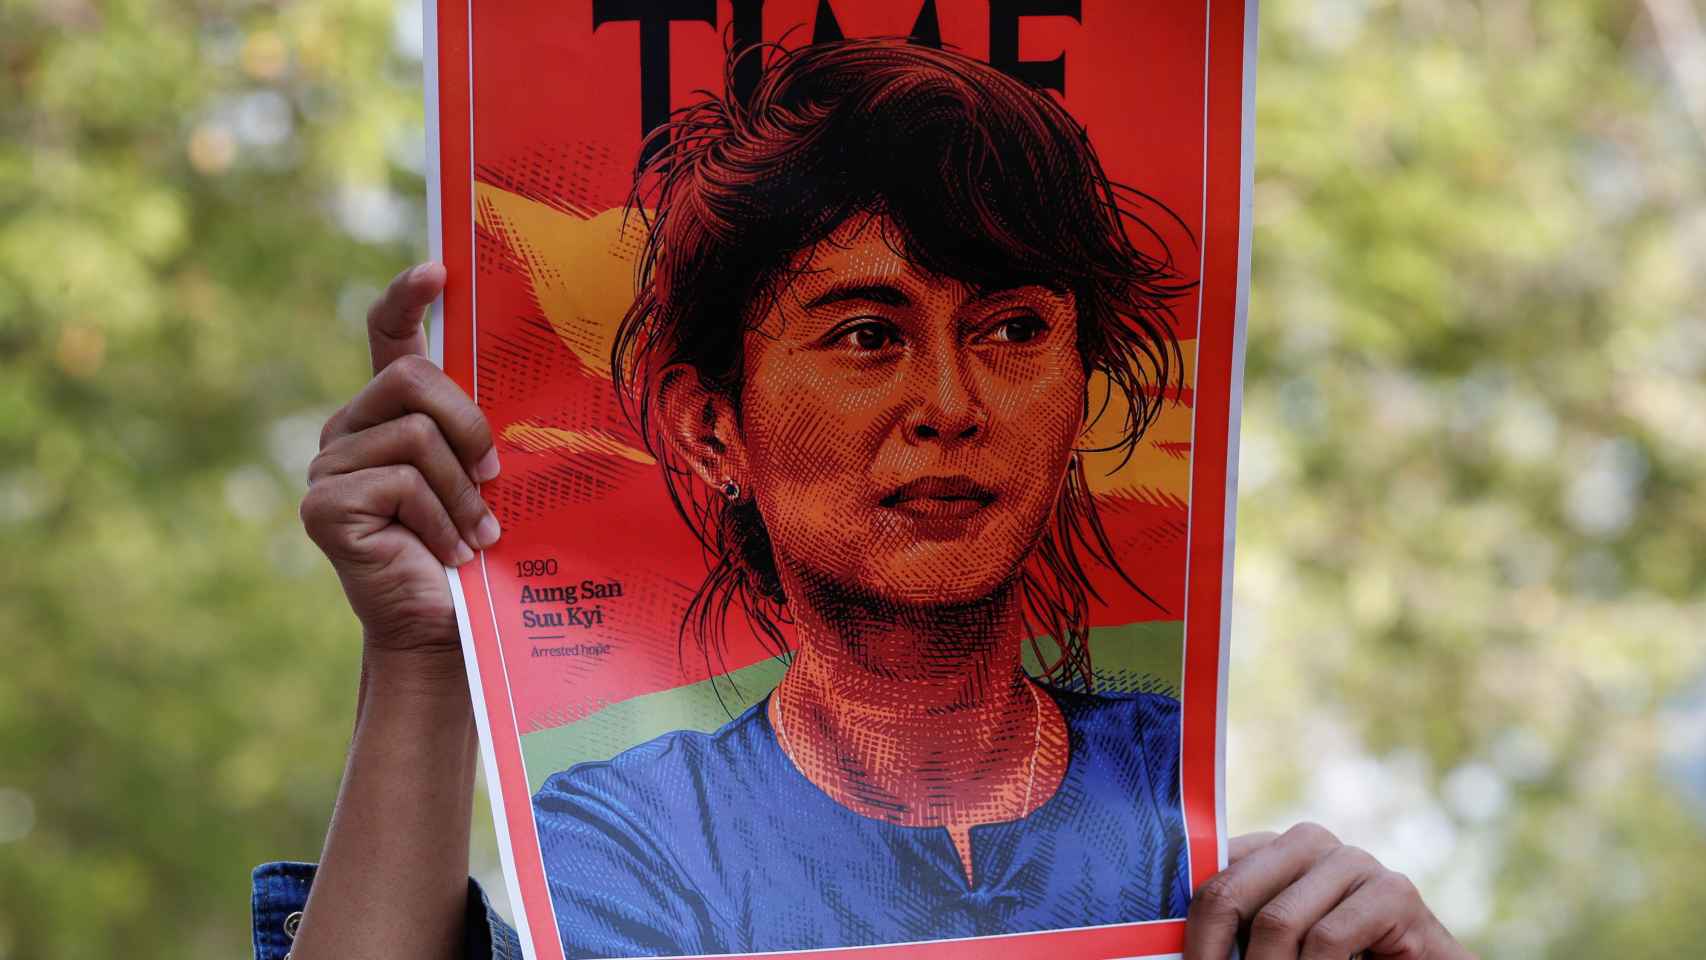 Un manifestante sujetando una pancarta con la cara de Aung San Suu Kyi.